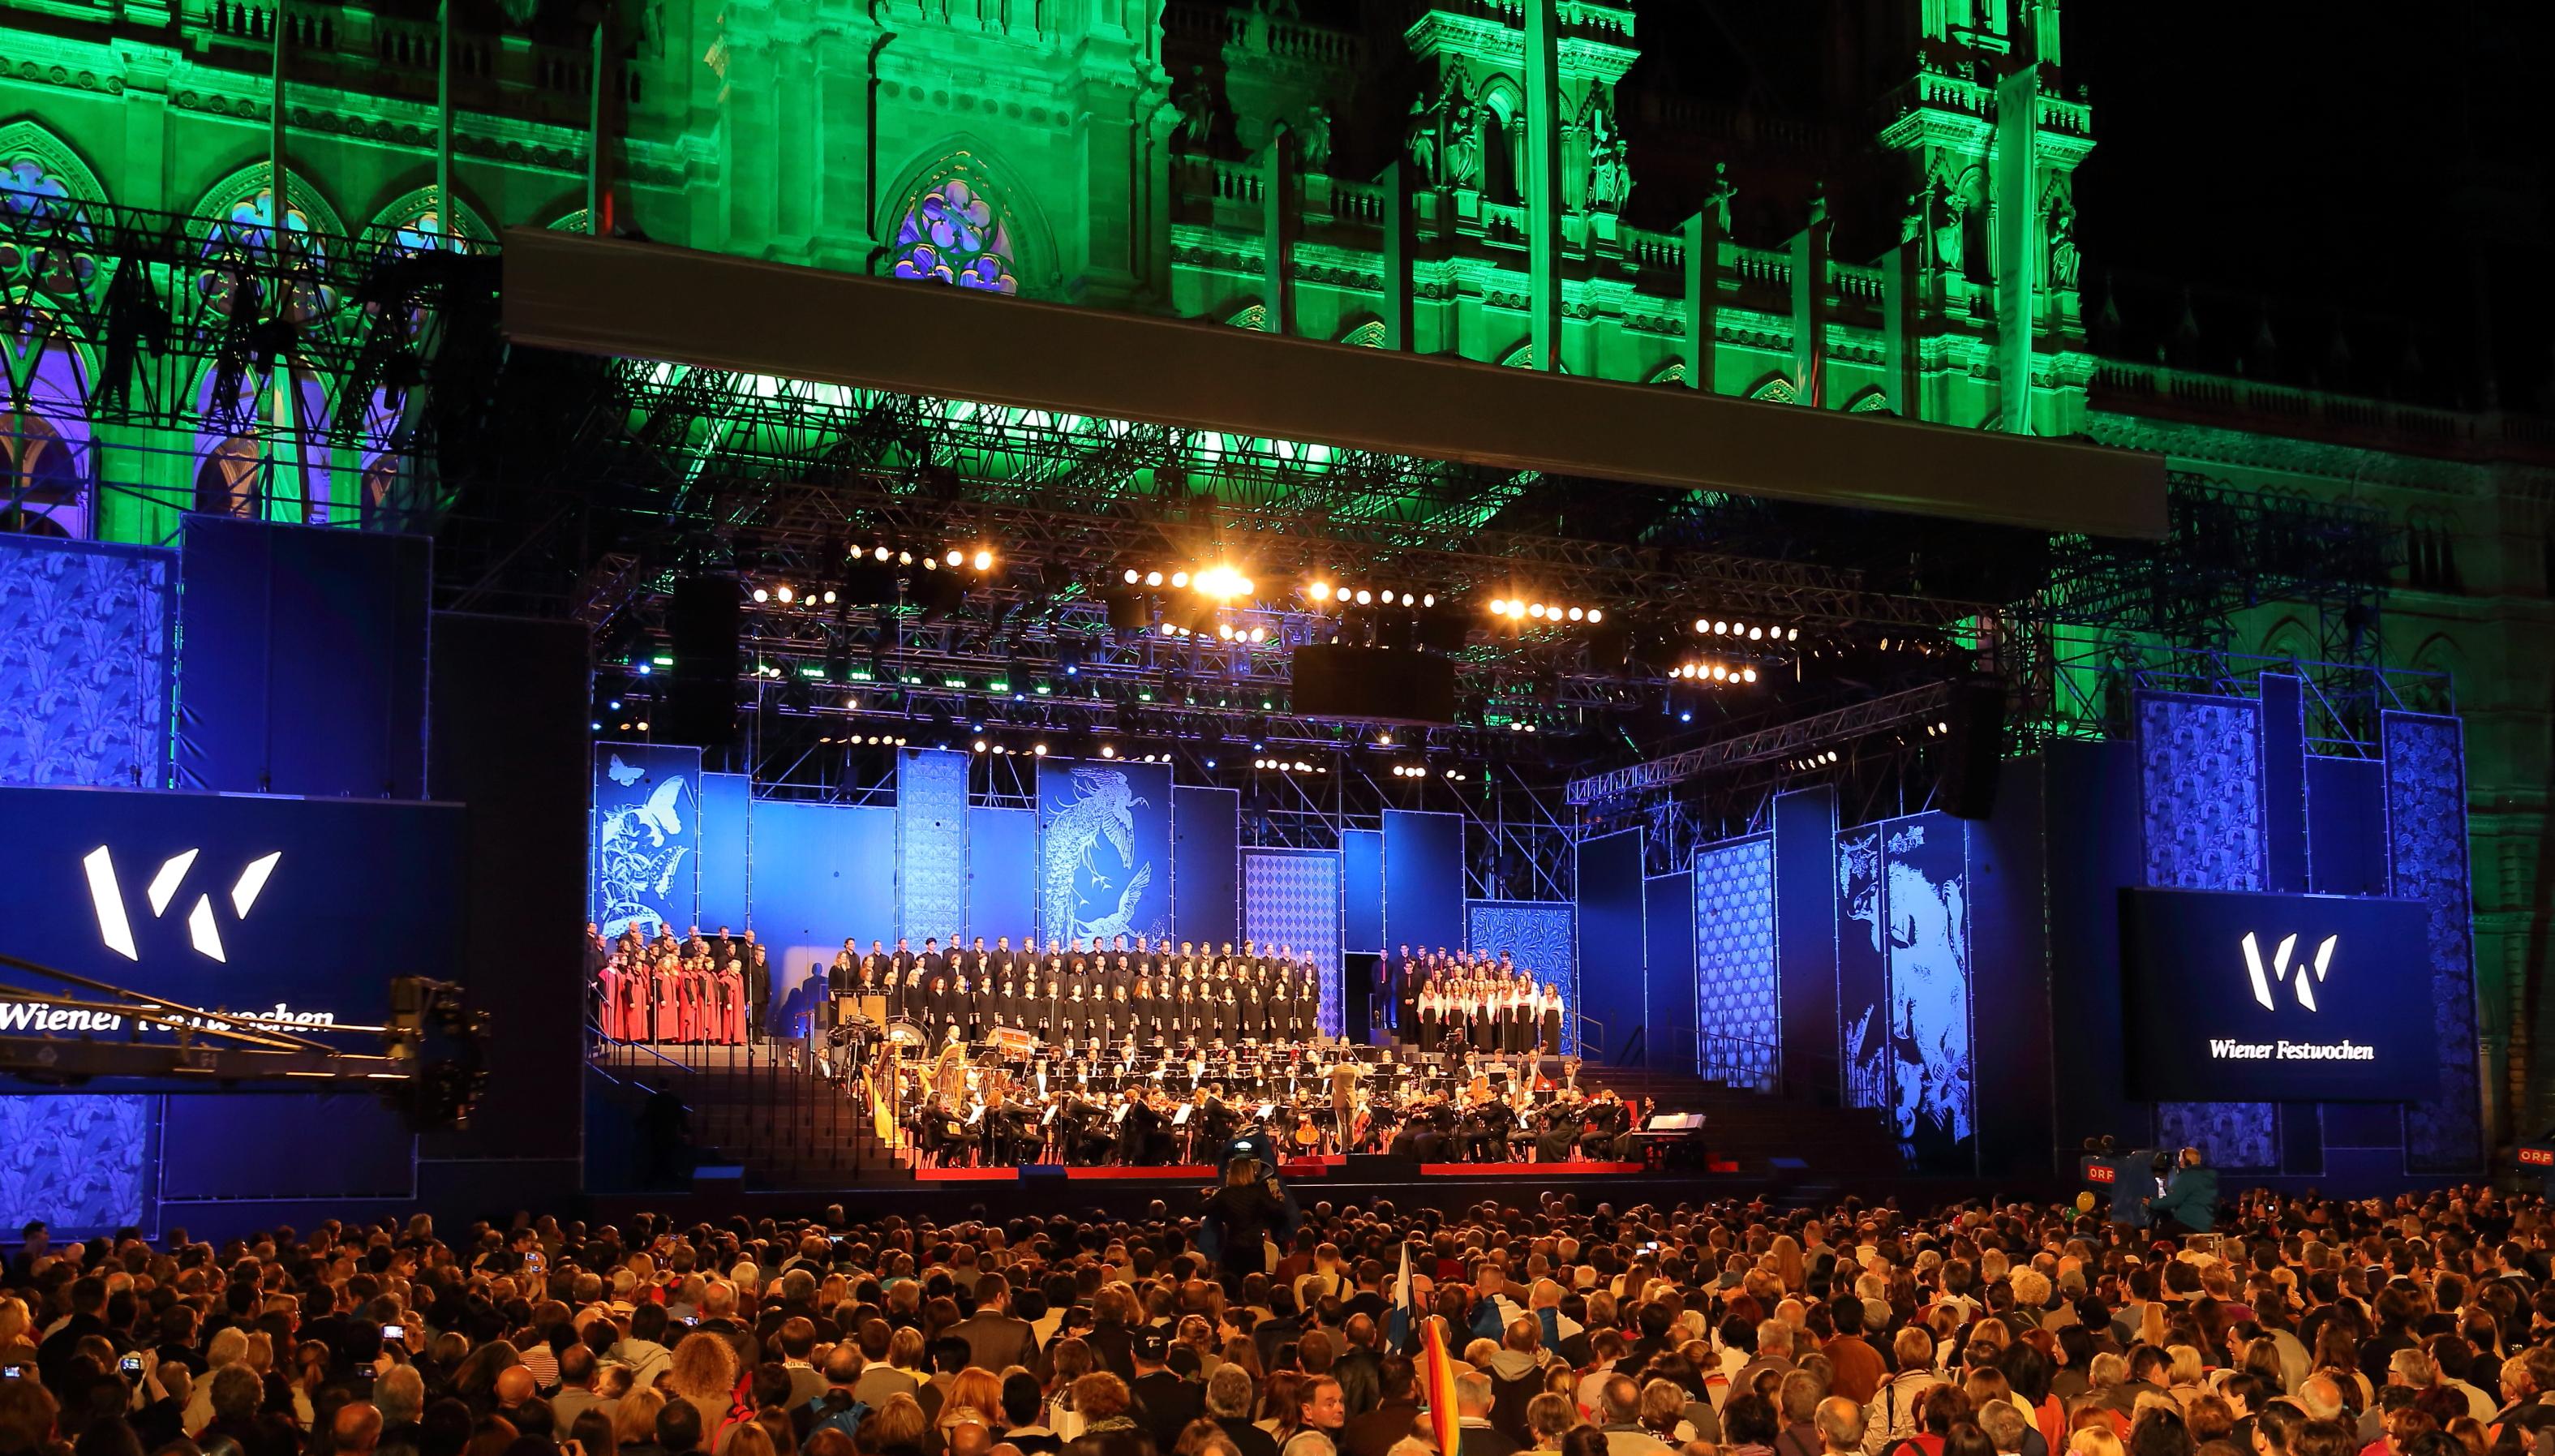 Eröffnungsveranstaltung der Wiener Festwochen 2014 am 9. Mai mit dem Arnold Schoenberg Chor und dem Radio-Symphonie